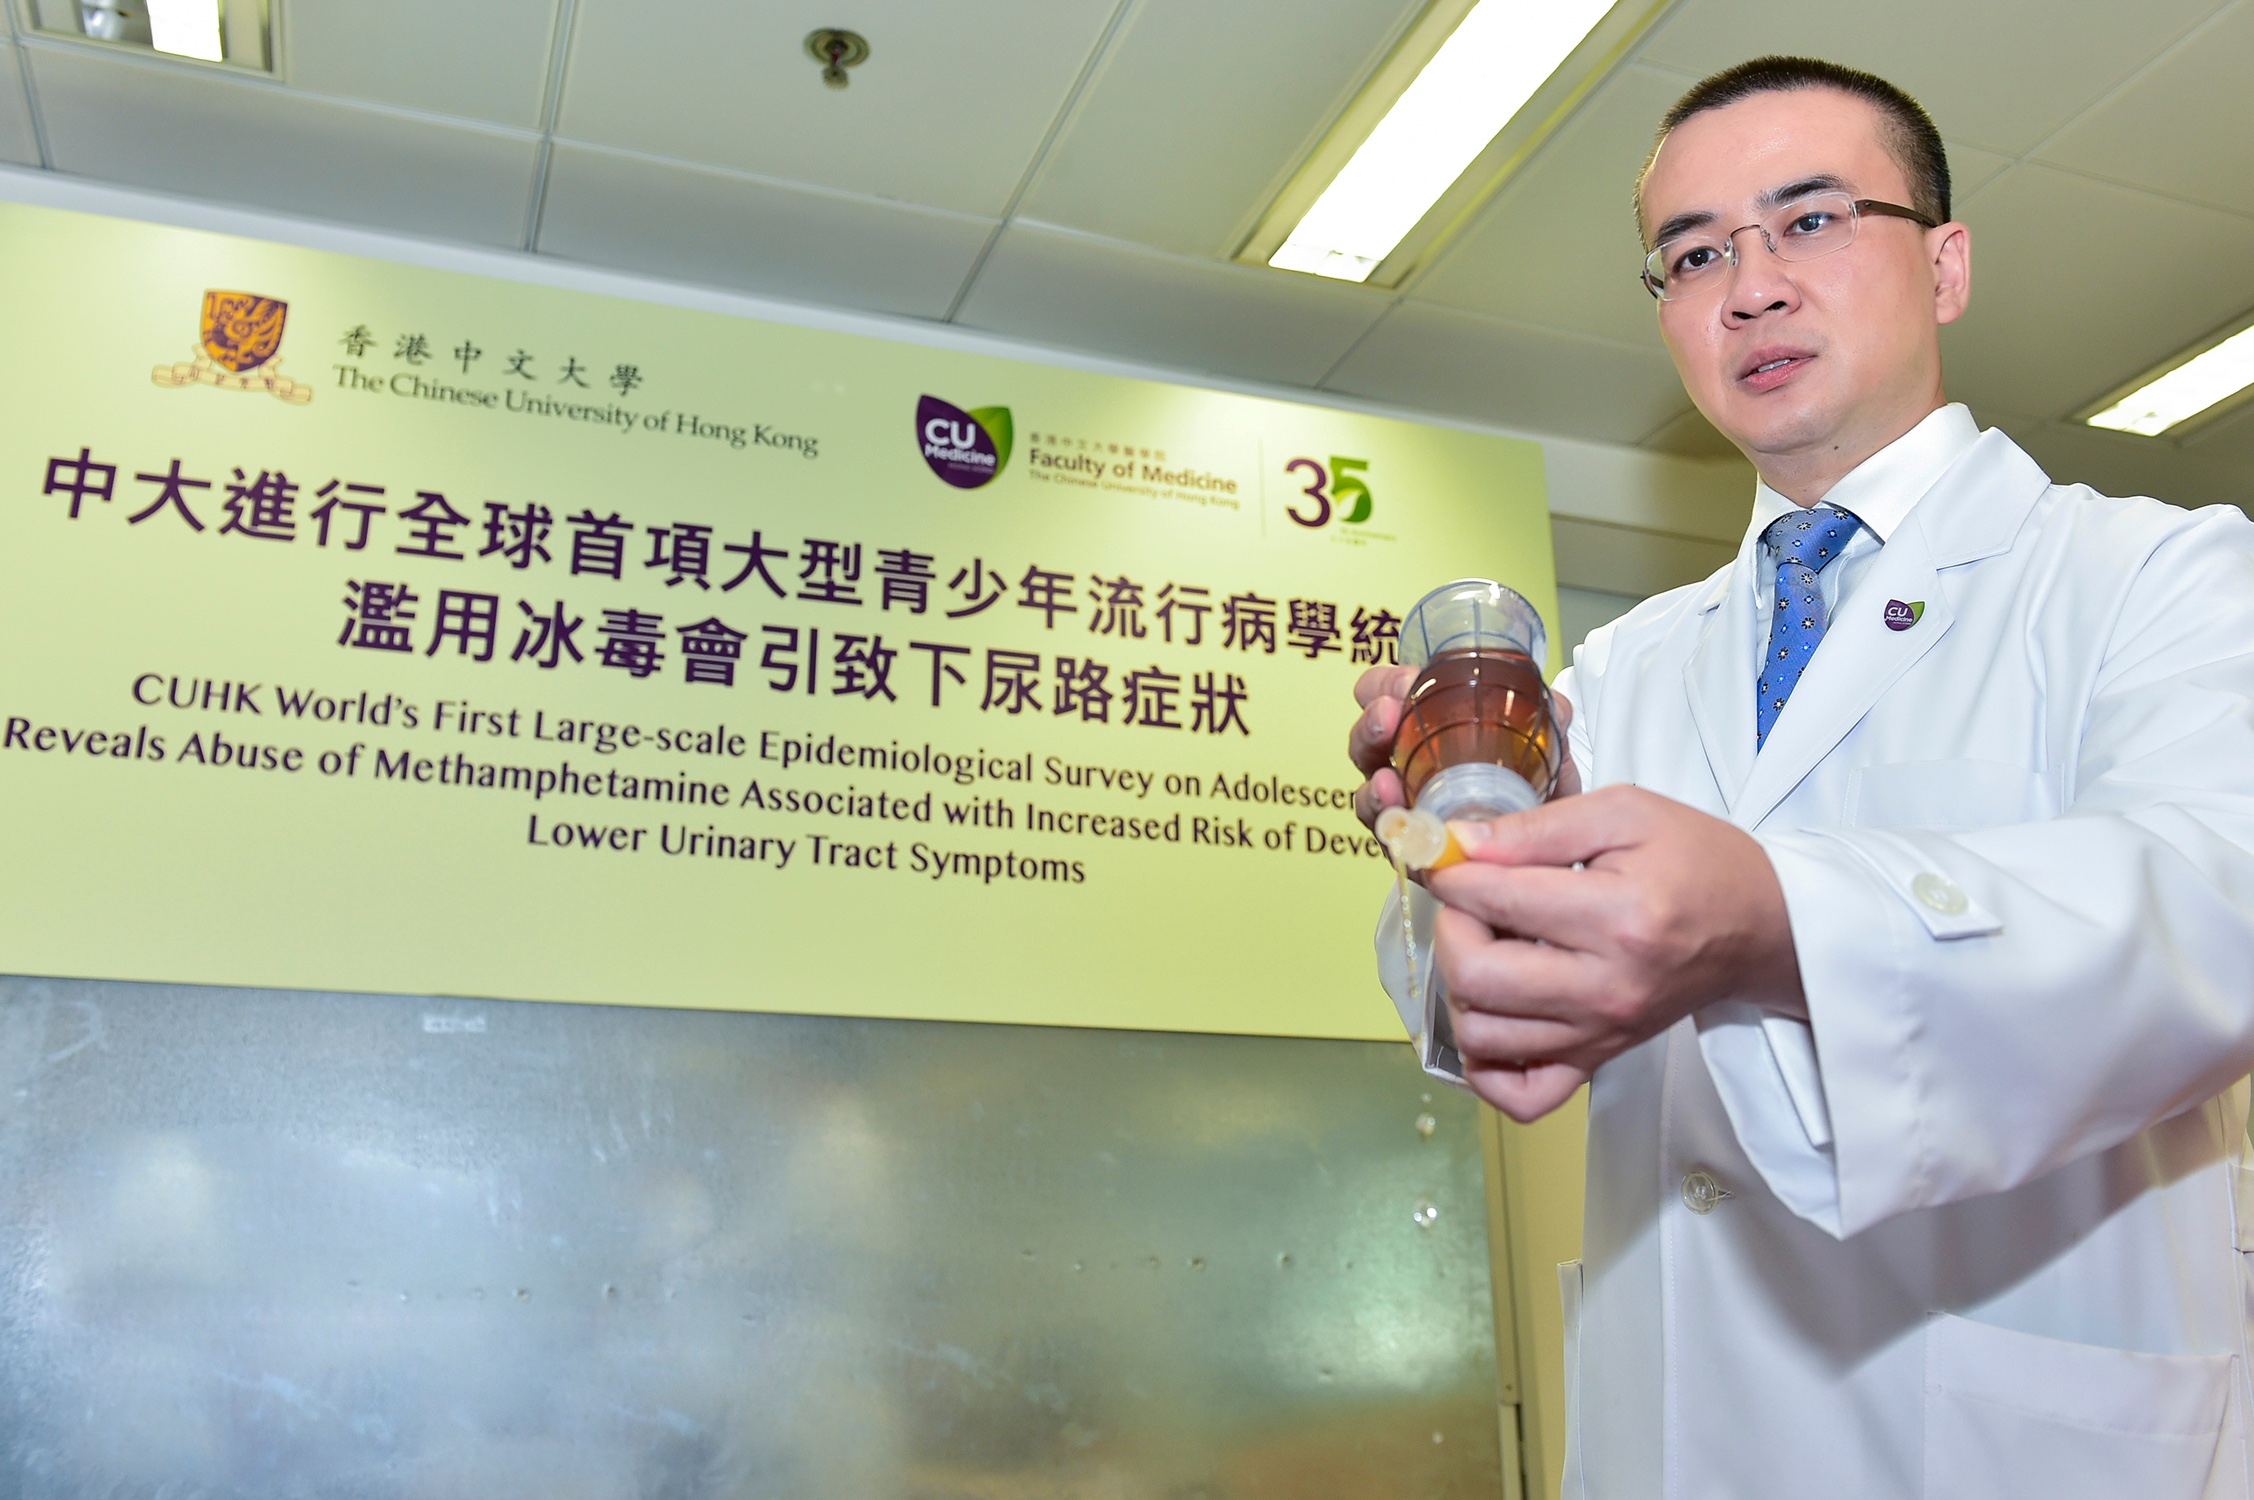 中大医学院外科学系泌尿外科教授及青少年泌尿治疗中心主管吴志辉教授表示，冰毒有可能透过神经系统影响膀胱括约肌的控制，构成排尿障碍。